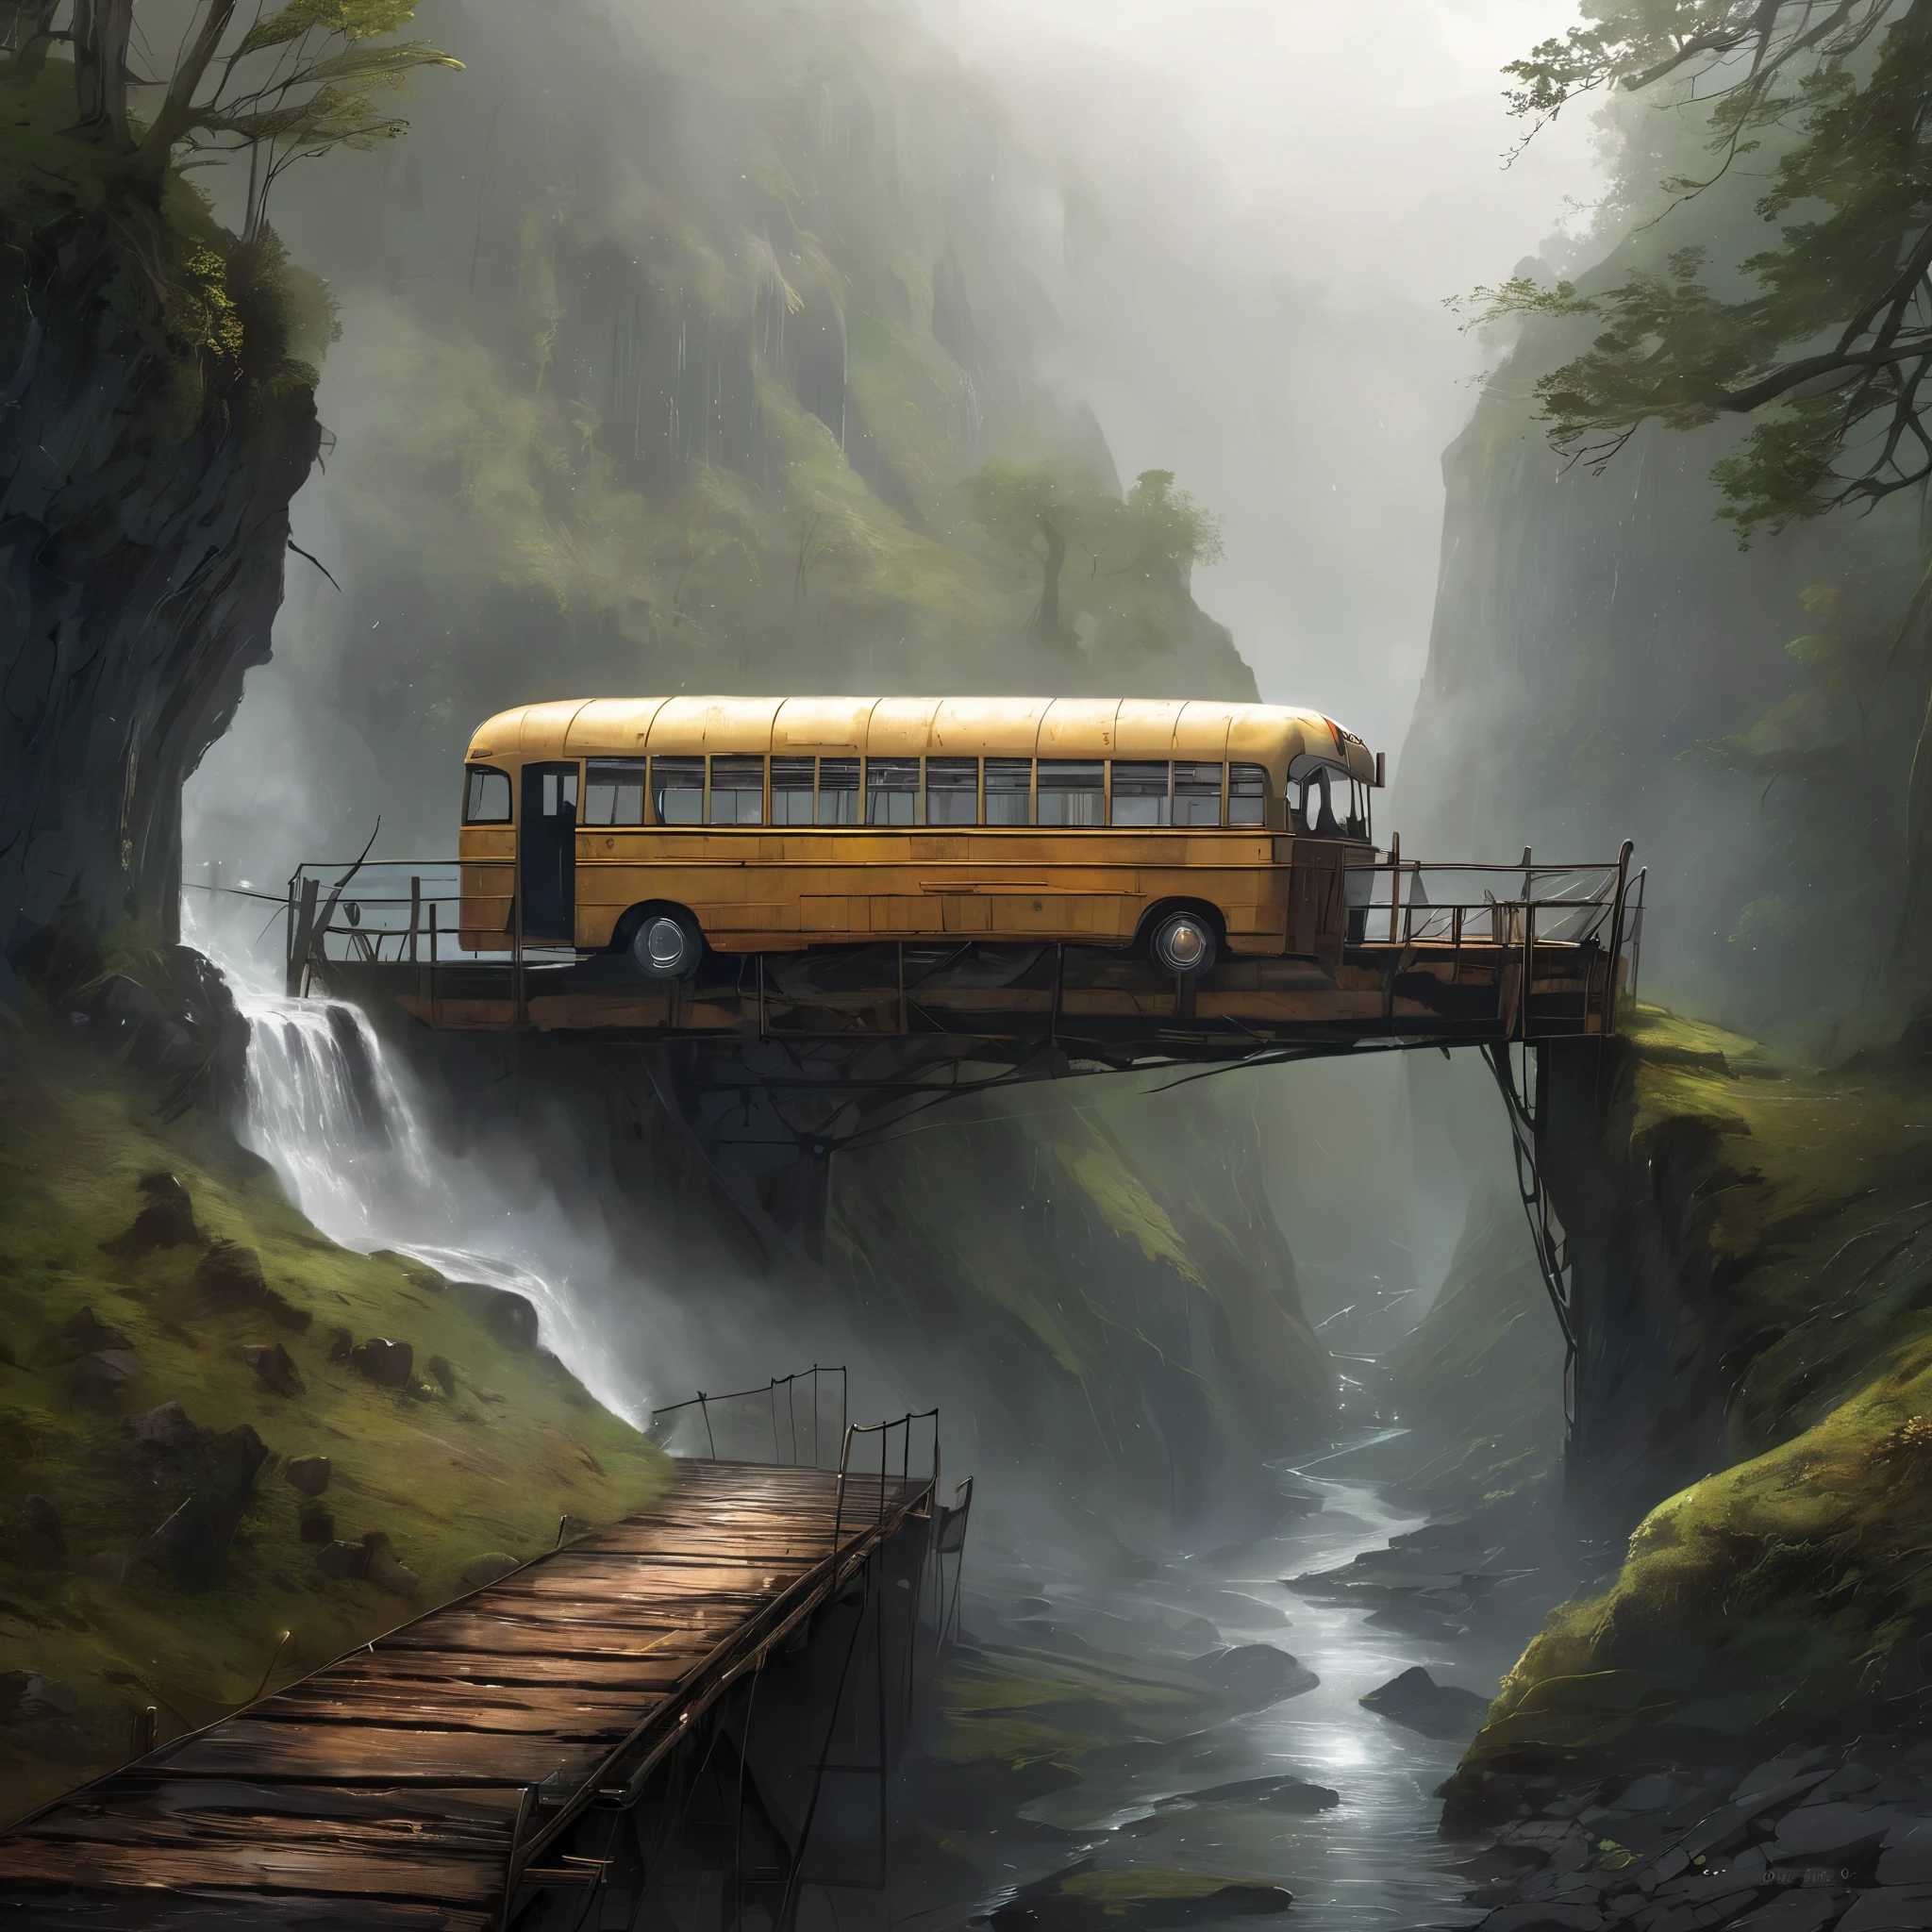 صورة واقعية لحافلة قديمة تستخدم كجسر في مضيق, طقس ممطر وكثير من الضباب, عظيم, سماوي, أثيري, تصويري, ملحمي, مهيب, سحري, فن الخيال, فن الغلاف, حالمة